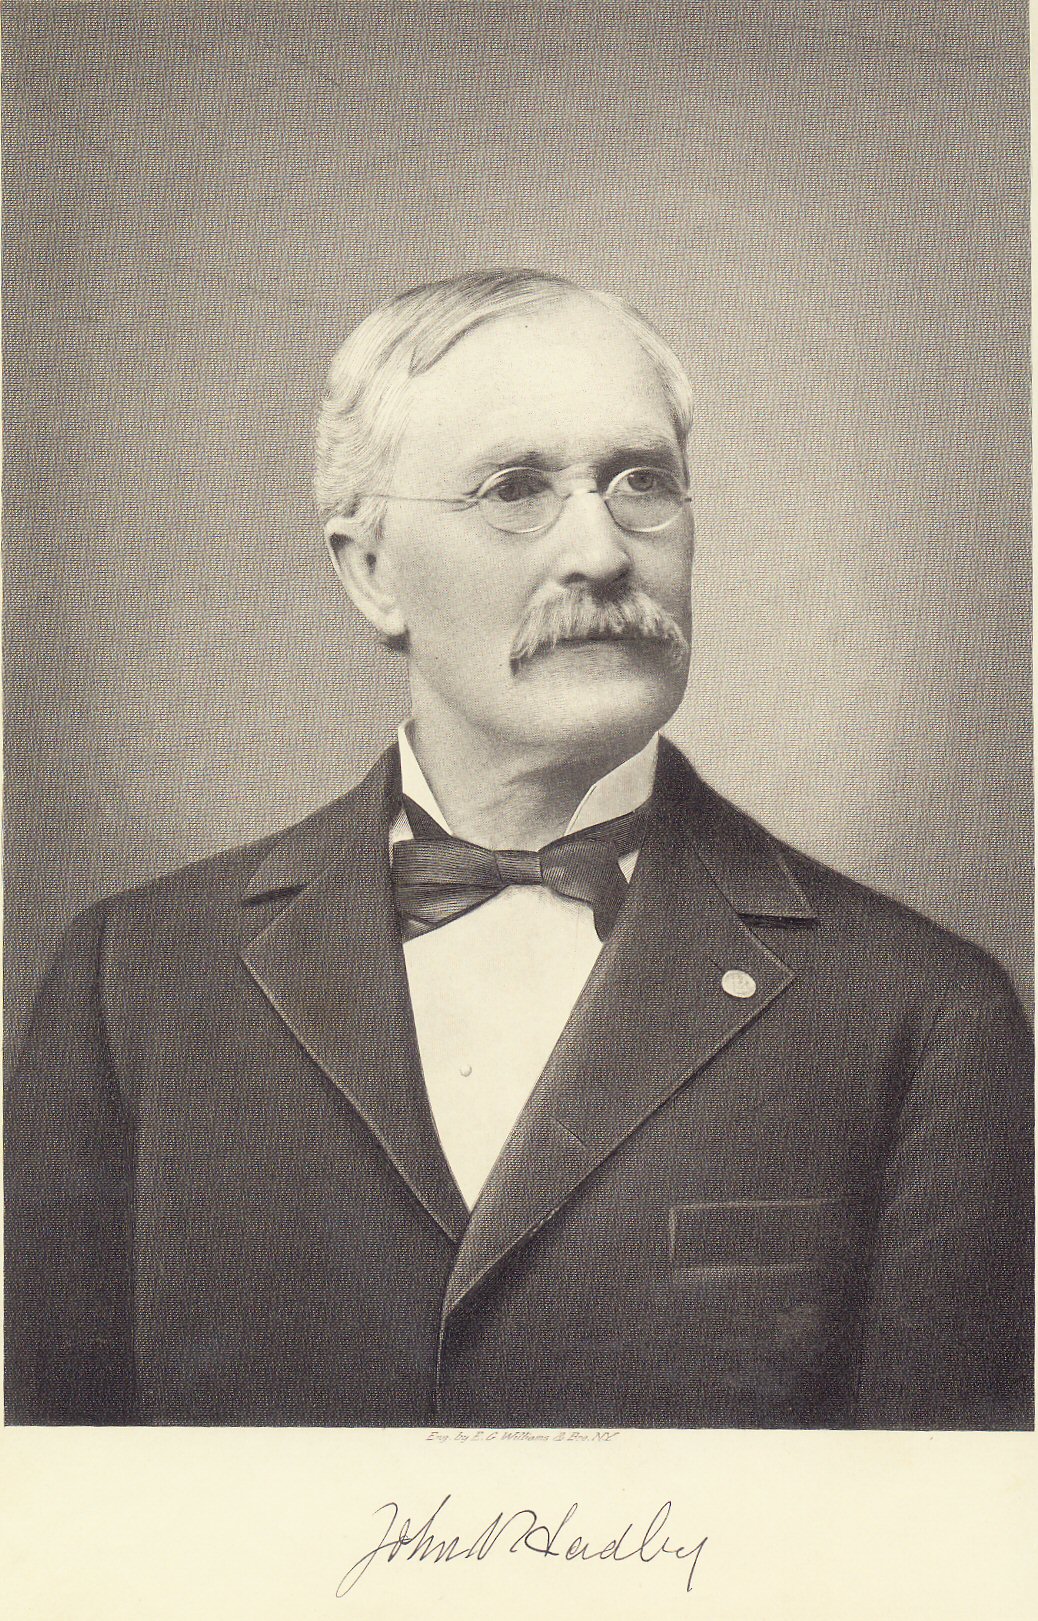 John V. Hadley